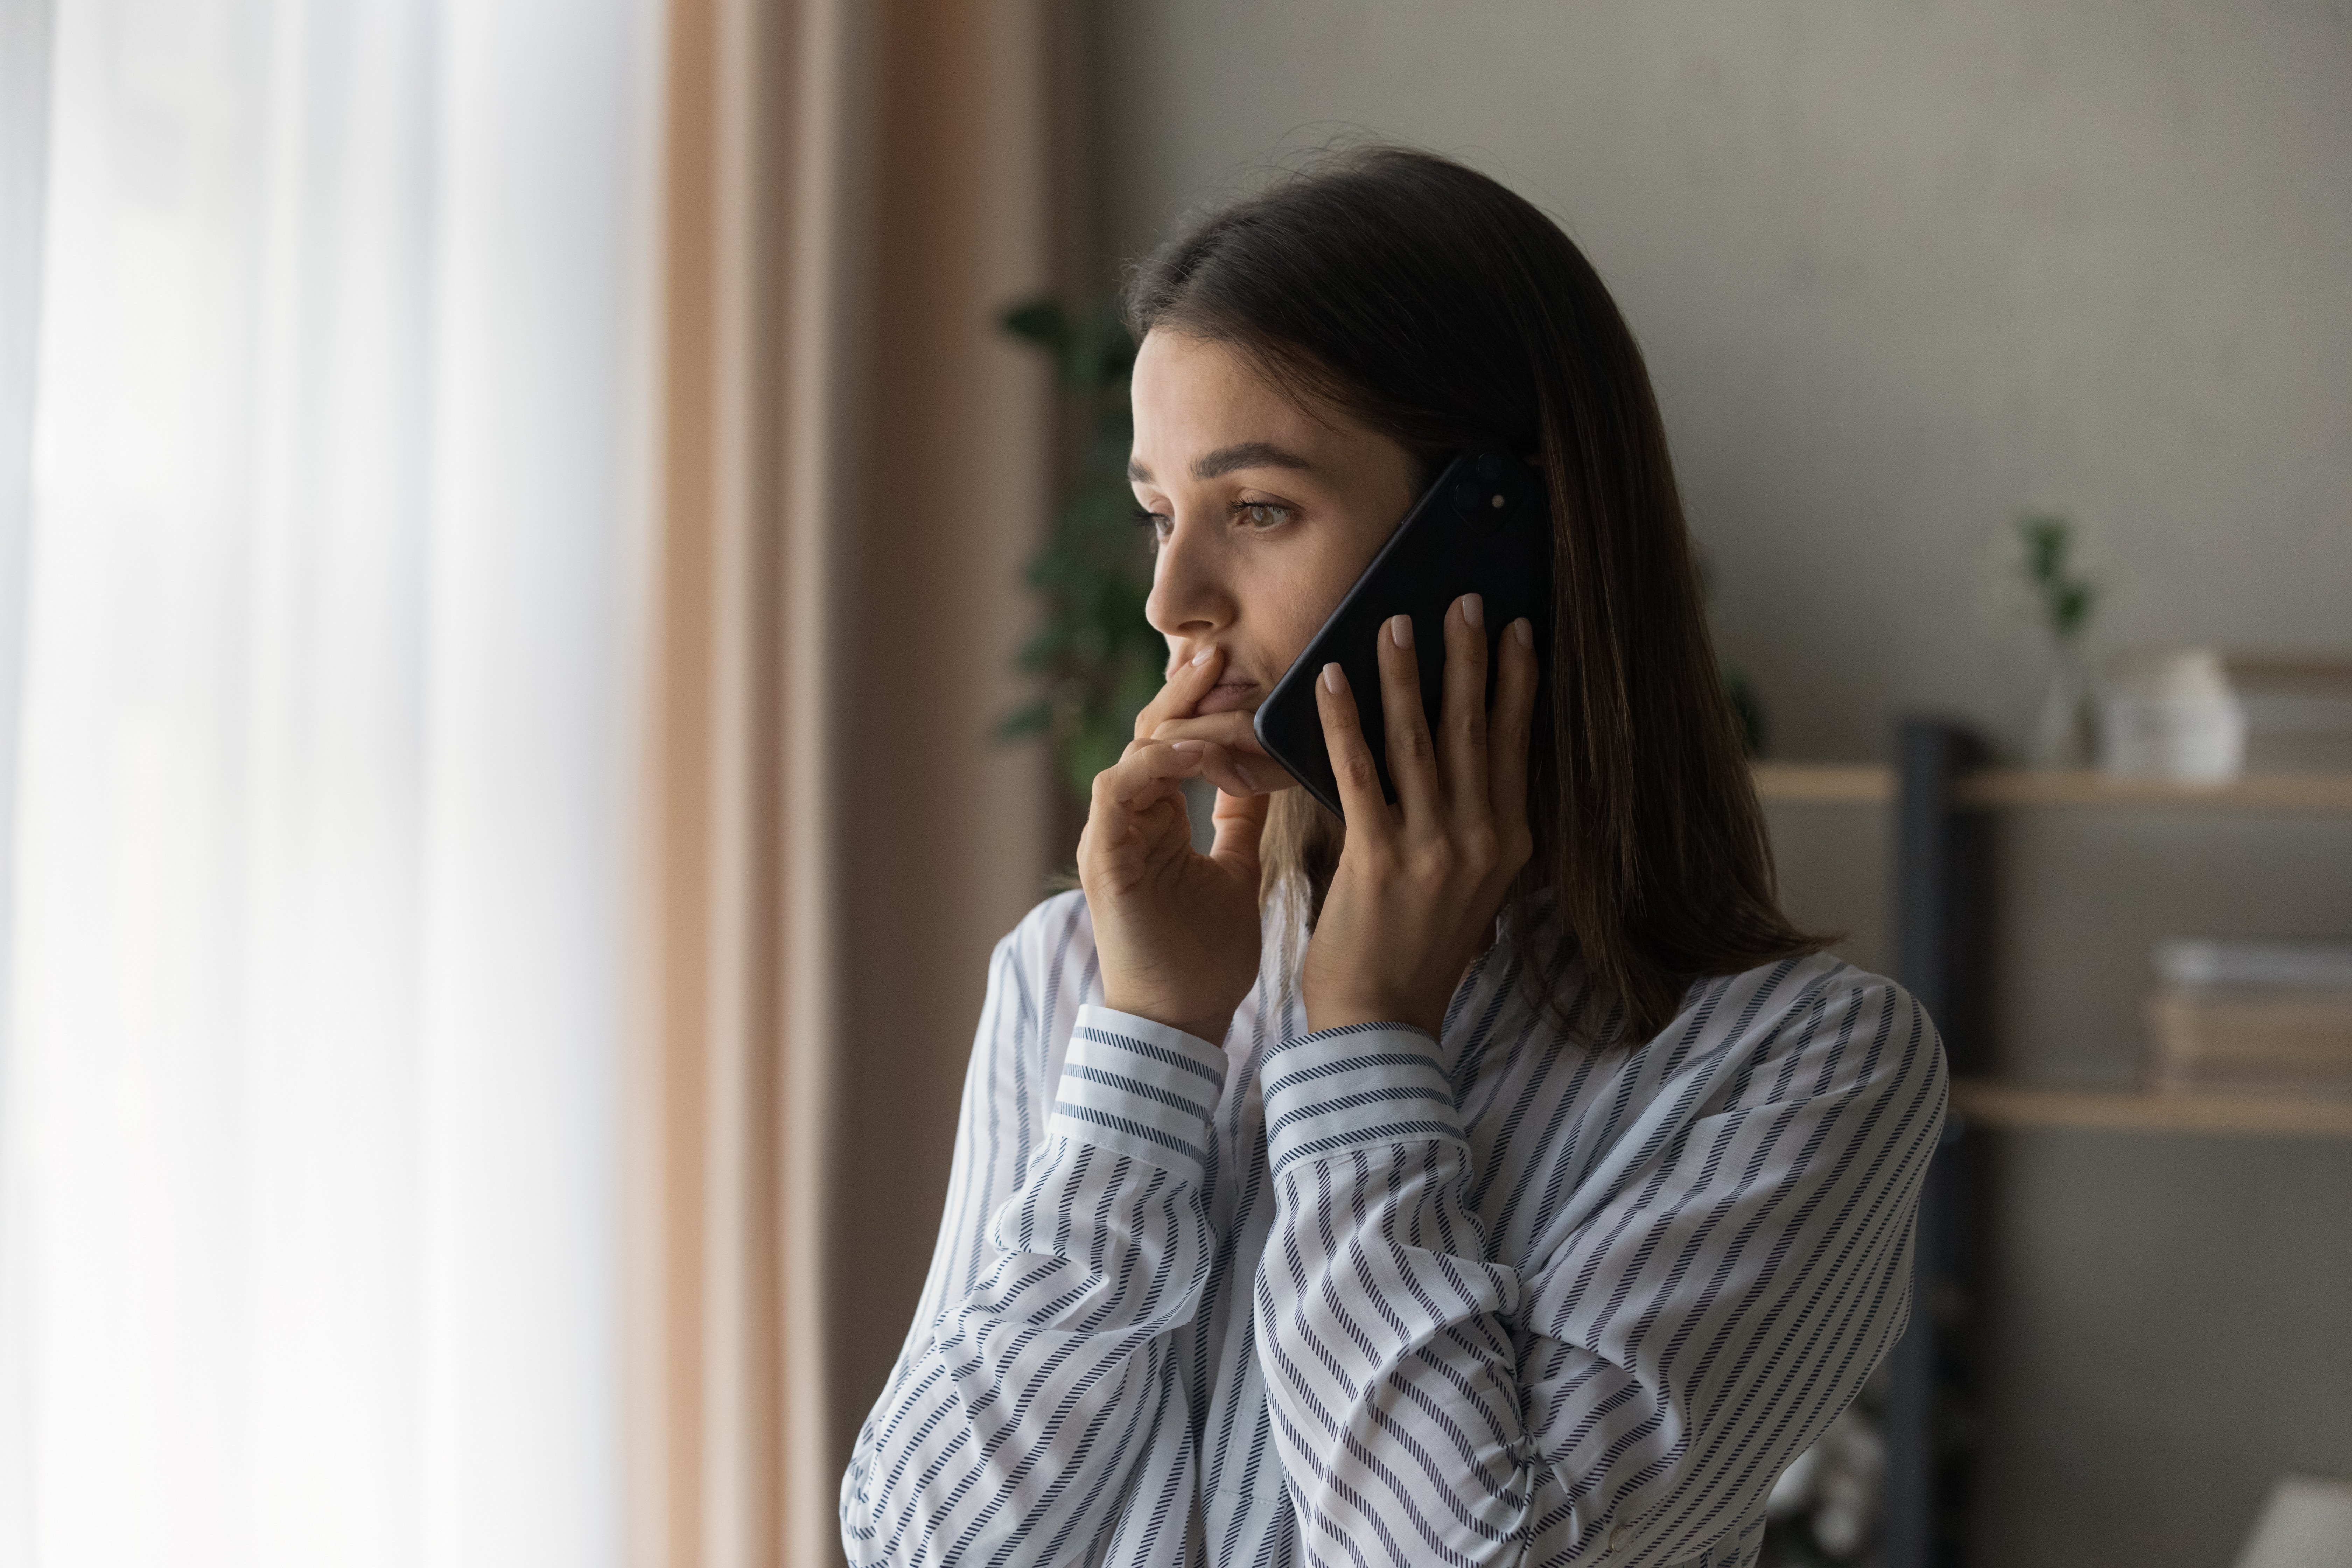 Eine junge Frau am Telefon | Quelle: Shutterstock